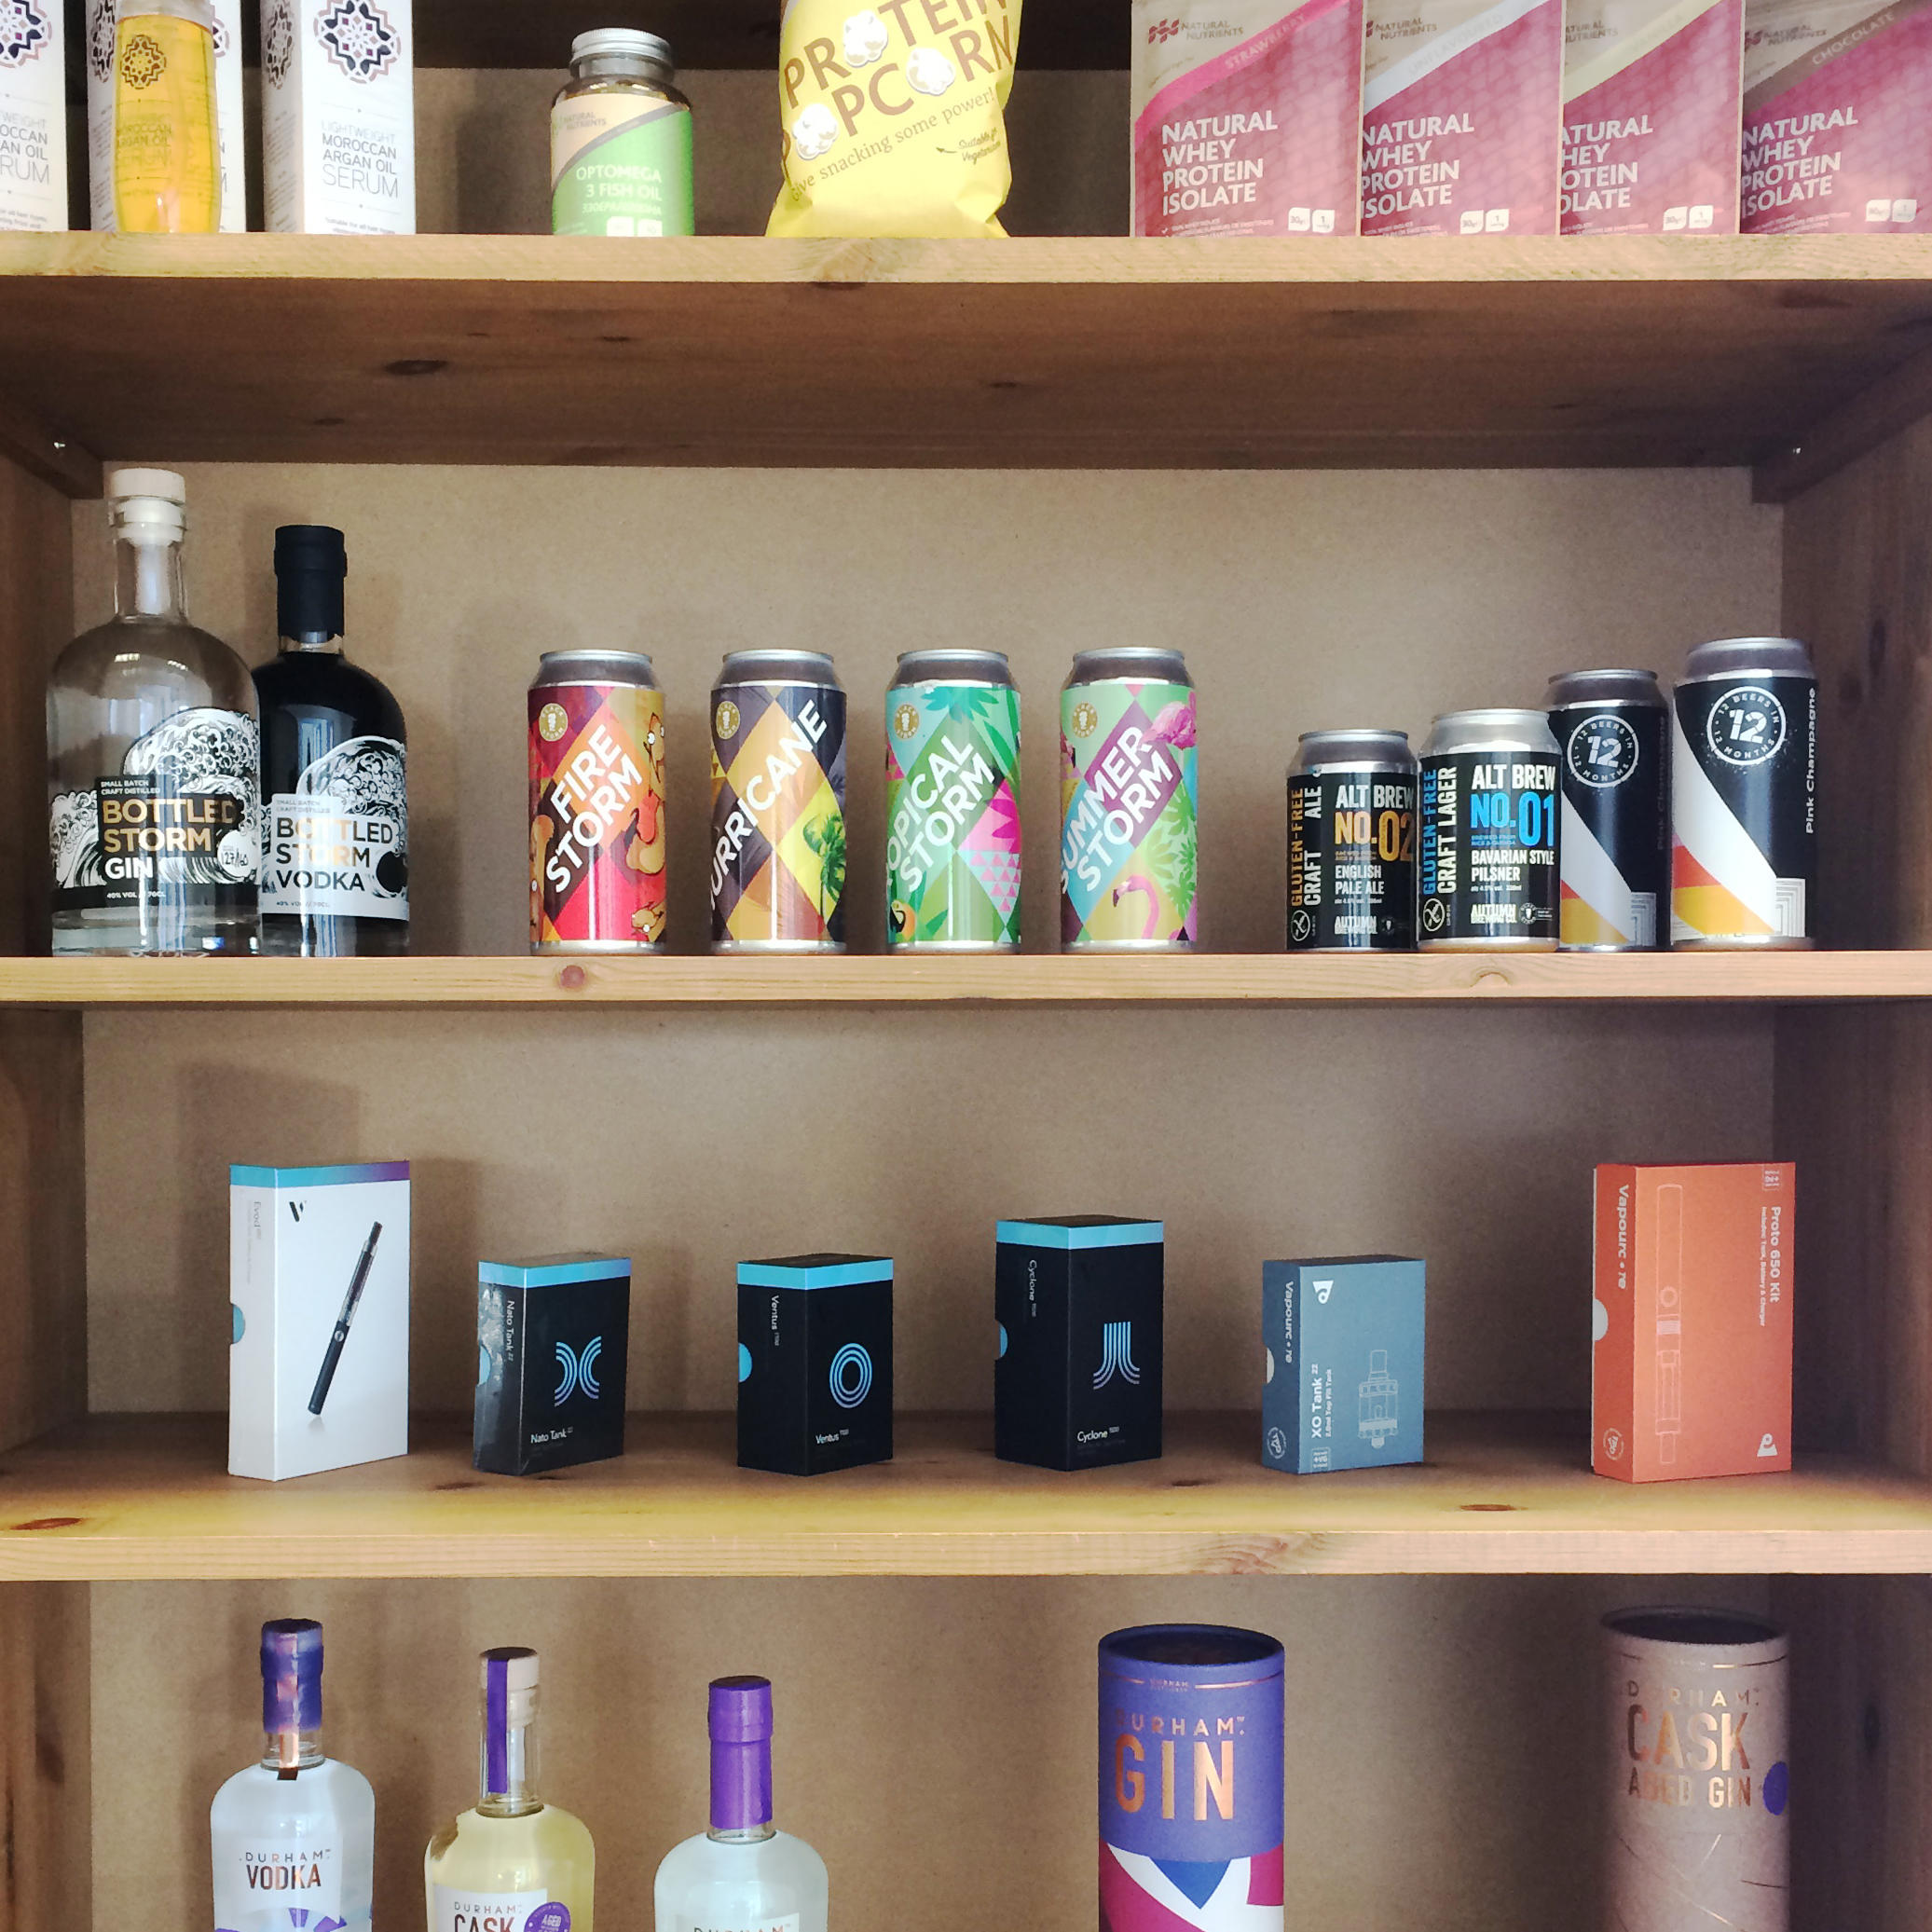 Shelf of Packaging designs created by Wonderstuff